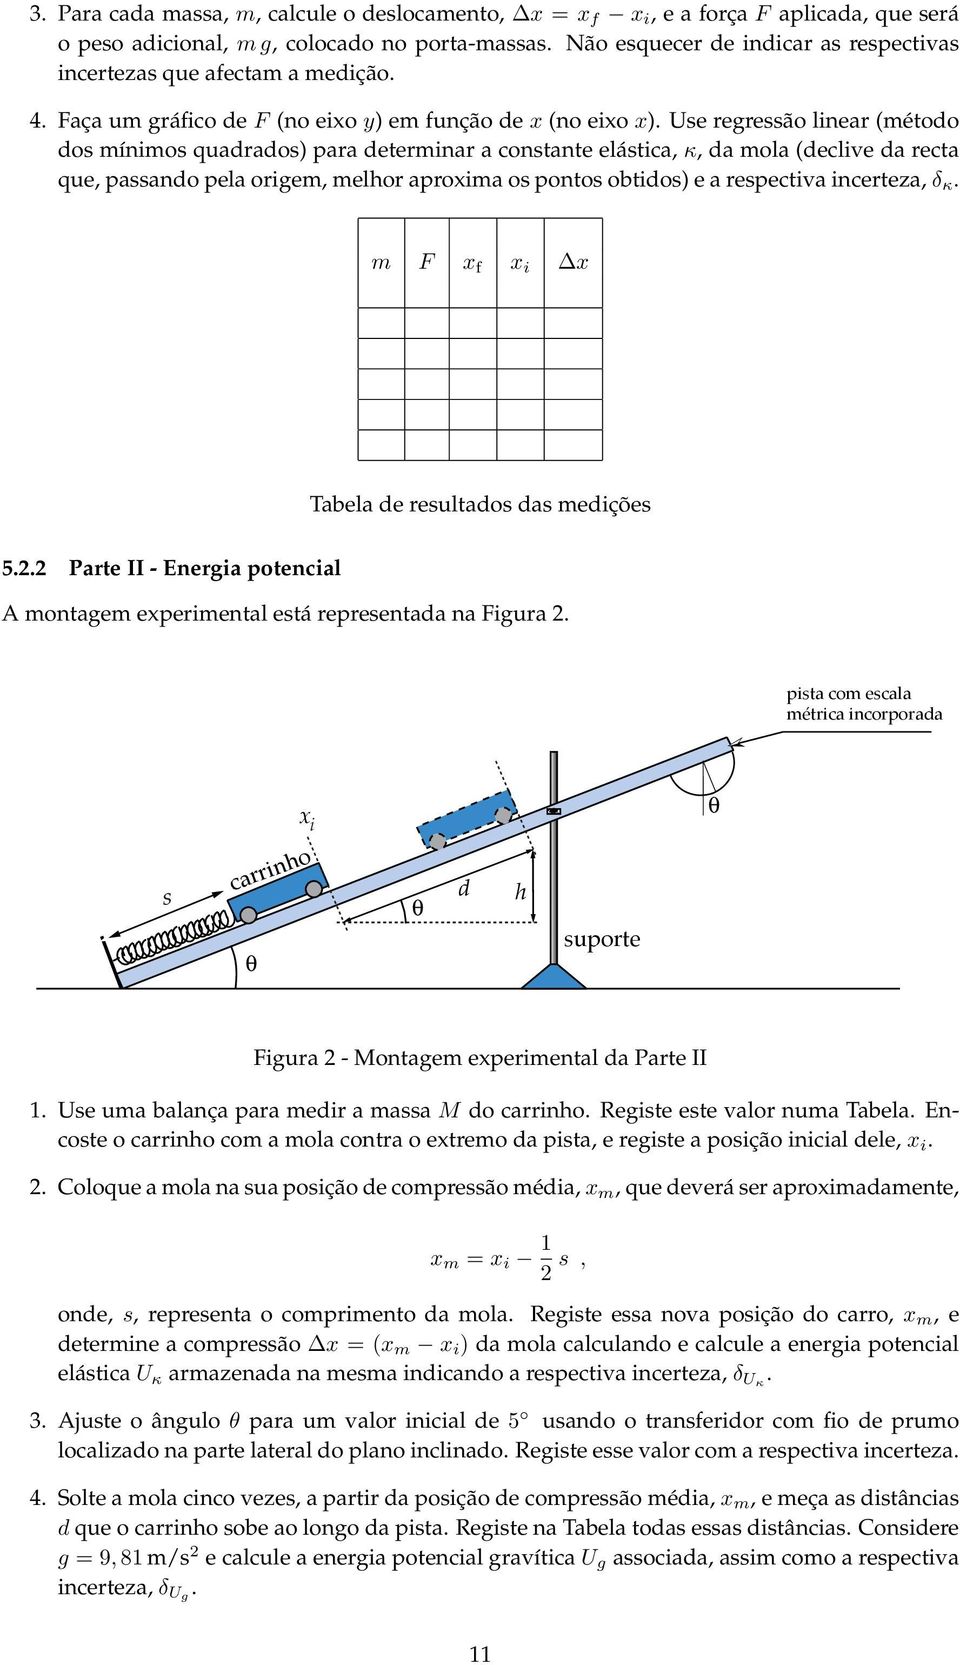 Use regressão linear (método dos mínimos quadrados) para determinar a constante elástica, κ, da mola (declive da recta que, passando pela origem, melhor aproxima os pontos obtidos) e a respectiva